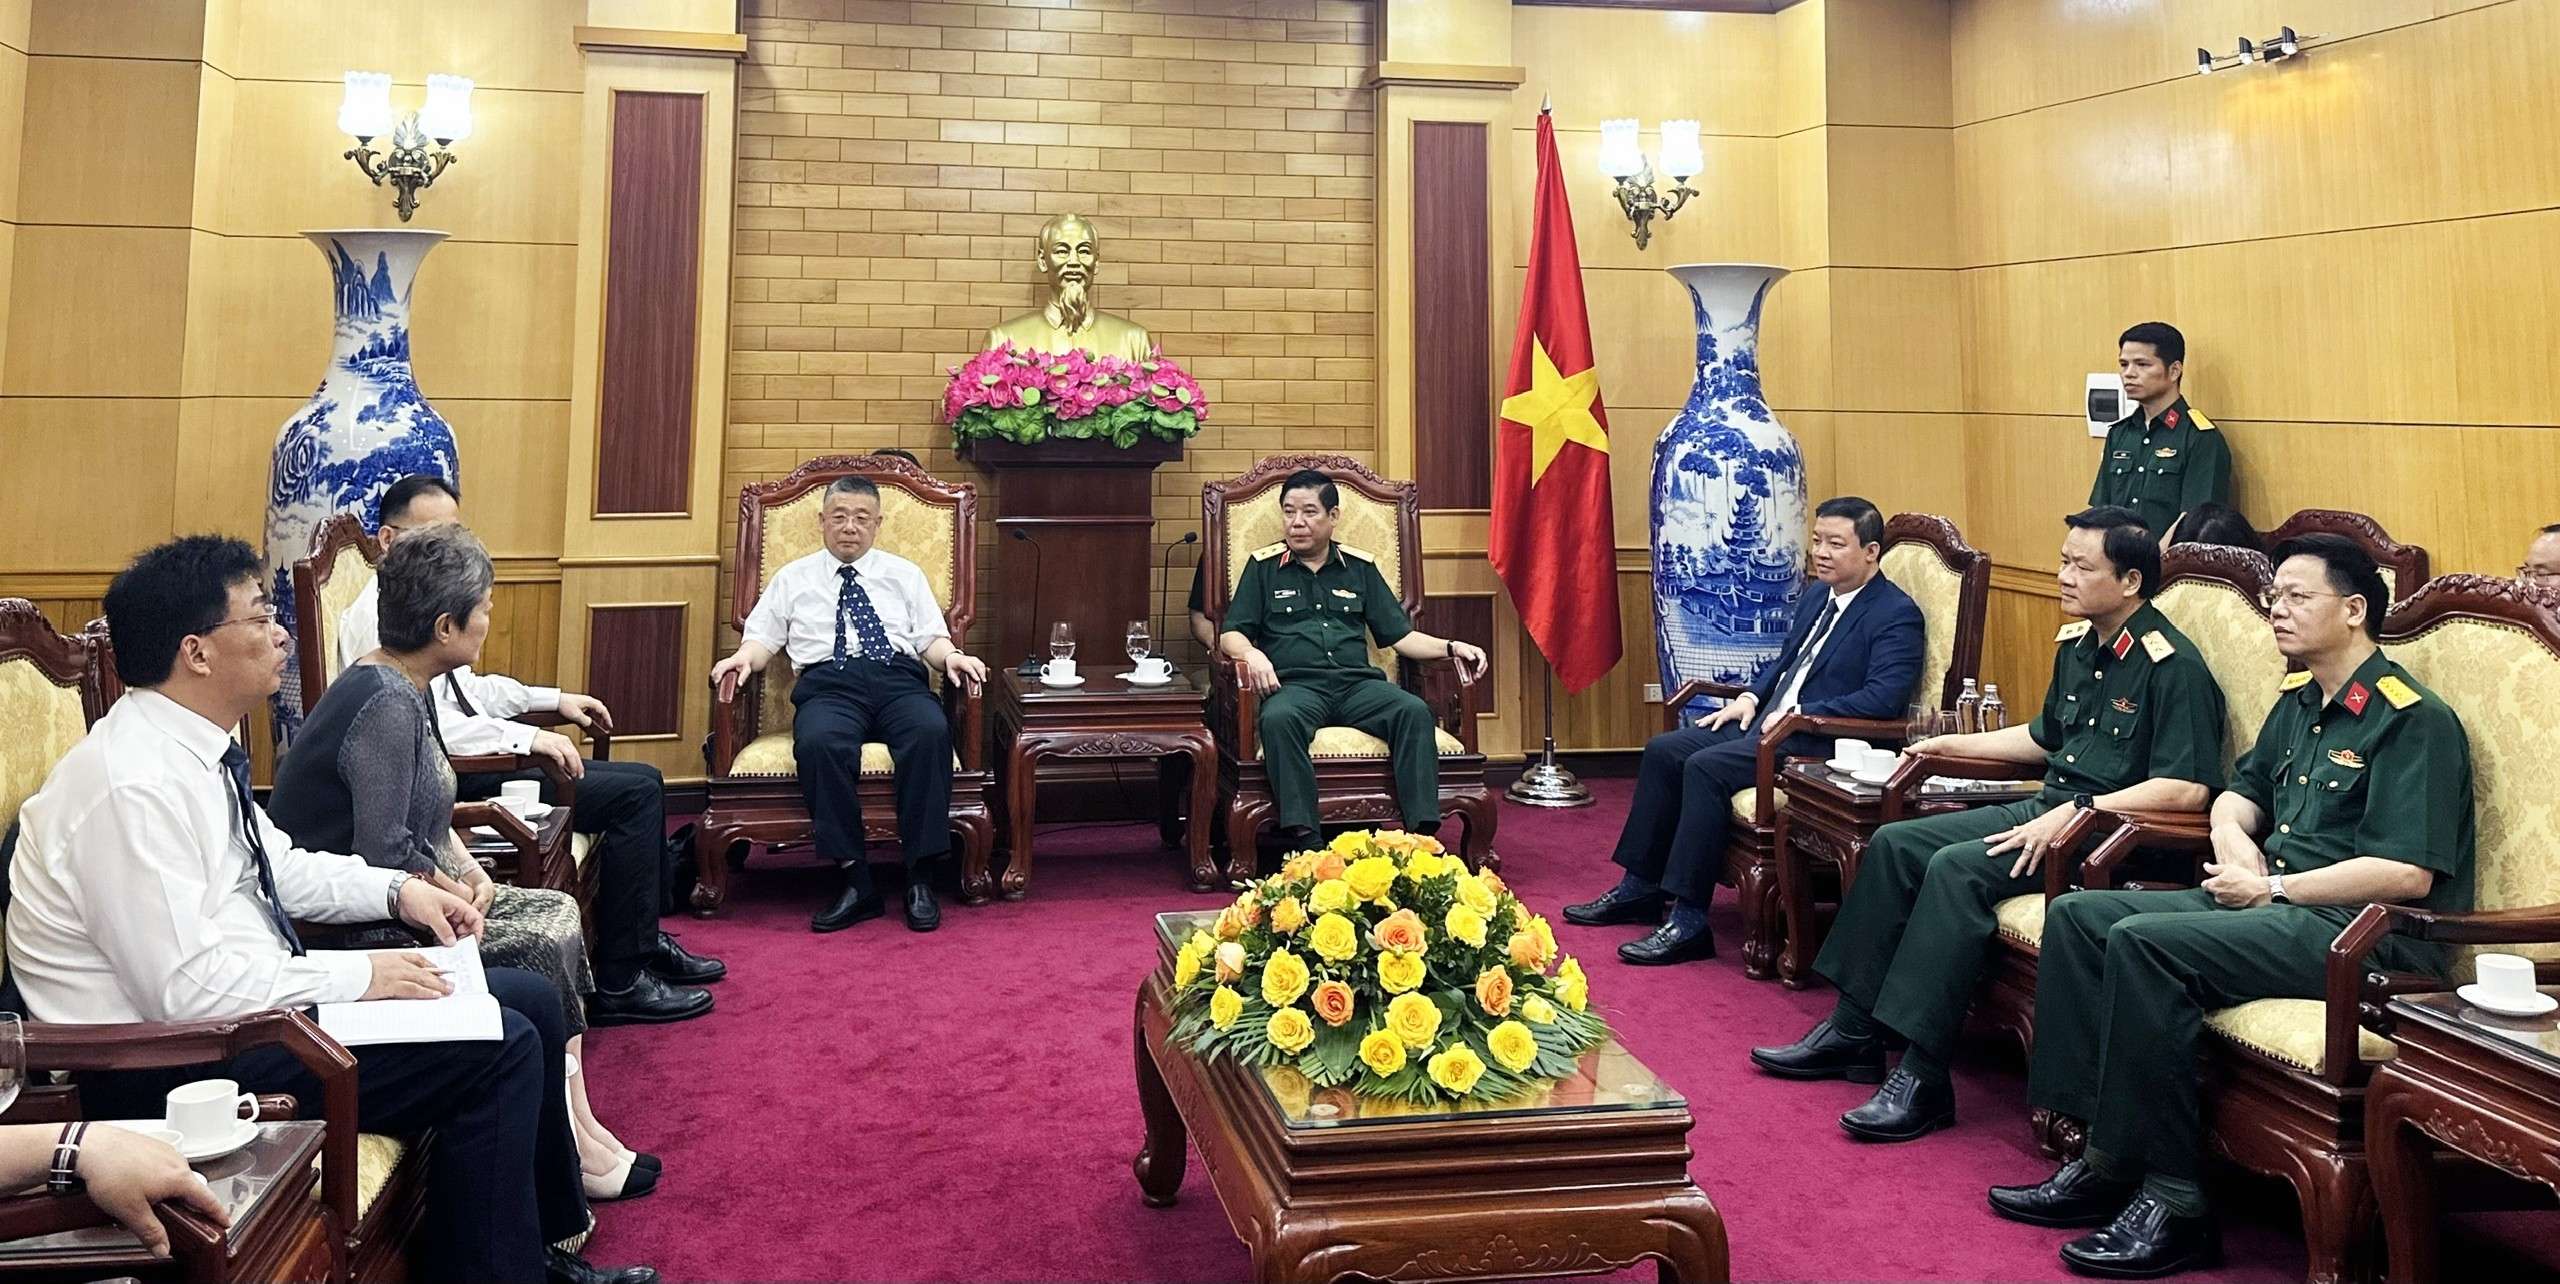 阮文熊中将5月9日在河内会见援越抗法的中国顾问和专家家属团